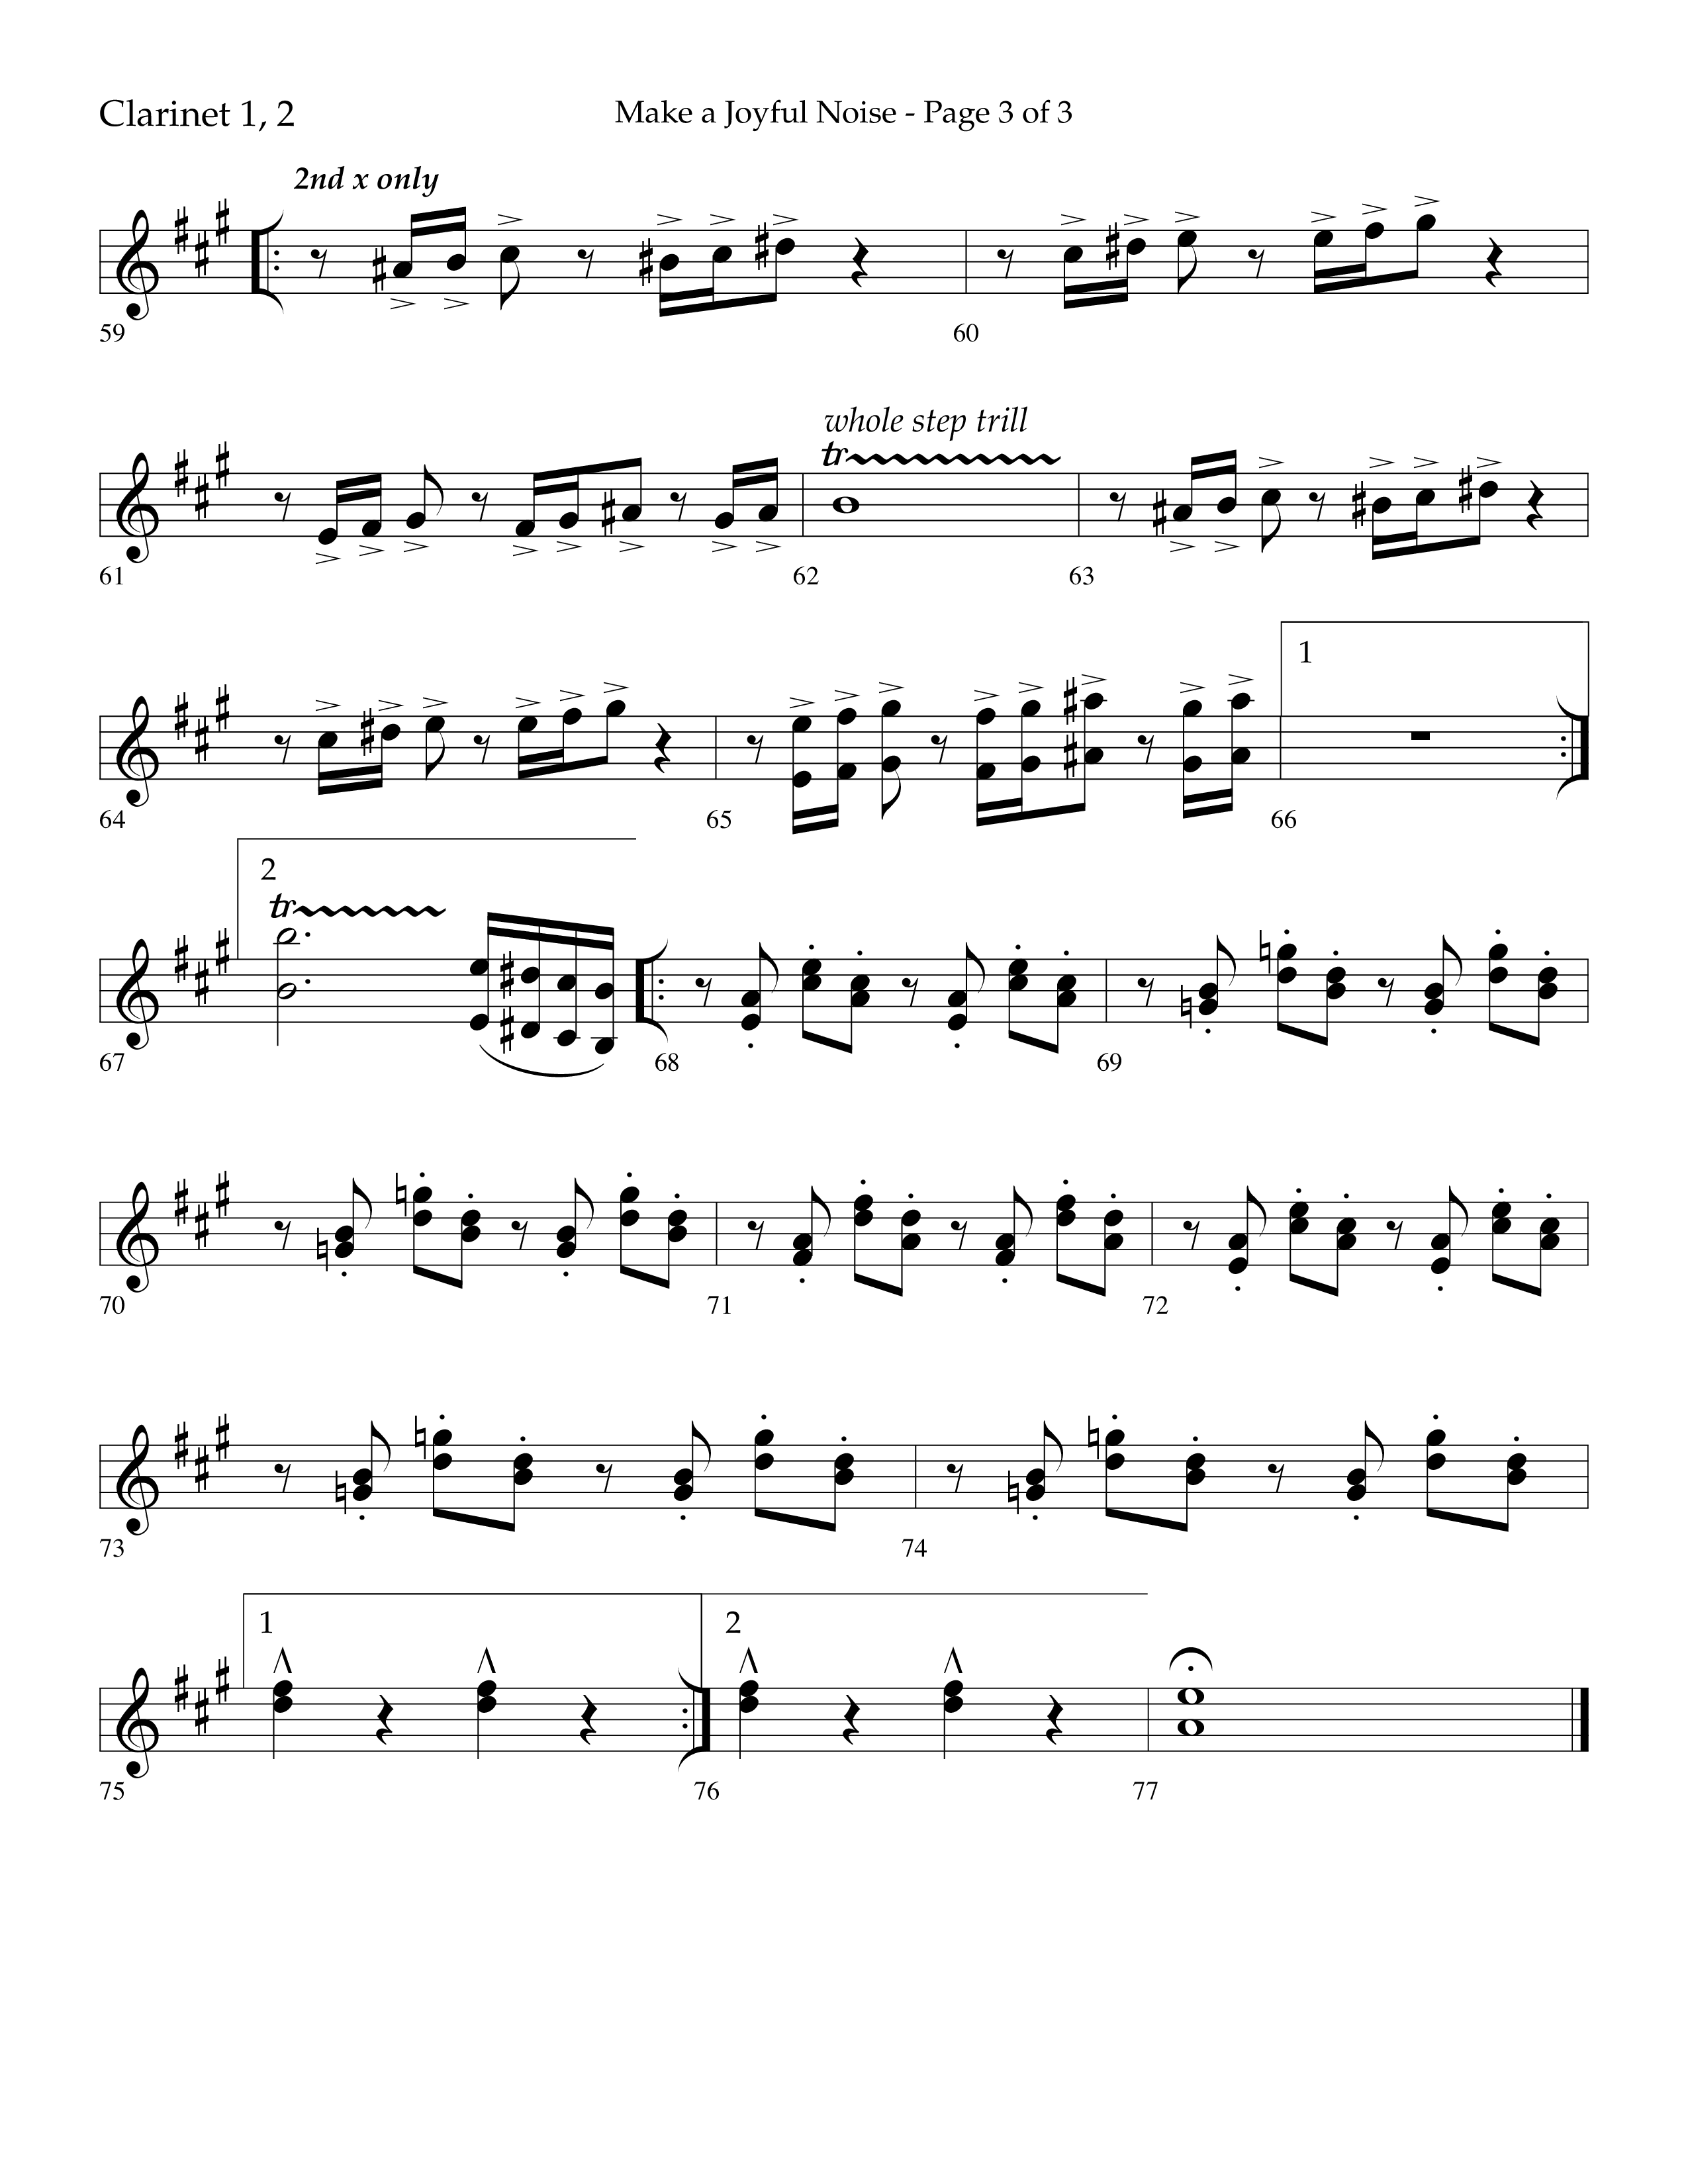 Make A Joyful Noise (Choral Anthem SATB) Clarinet 1/2 (Lifeway Choral / Arr. David Wise / Orch. Daniel Semsen)